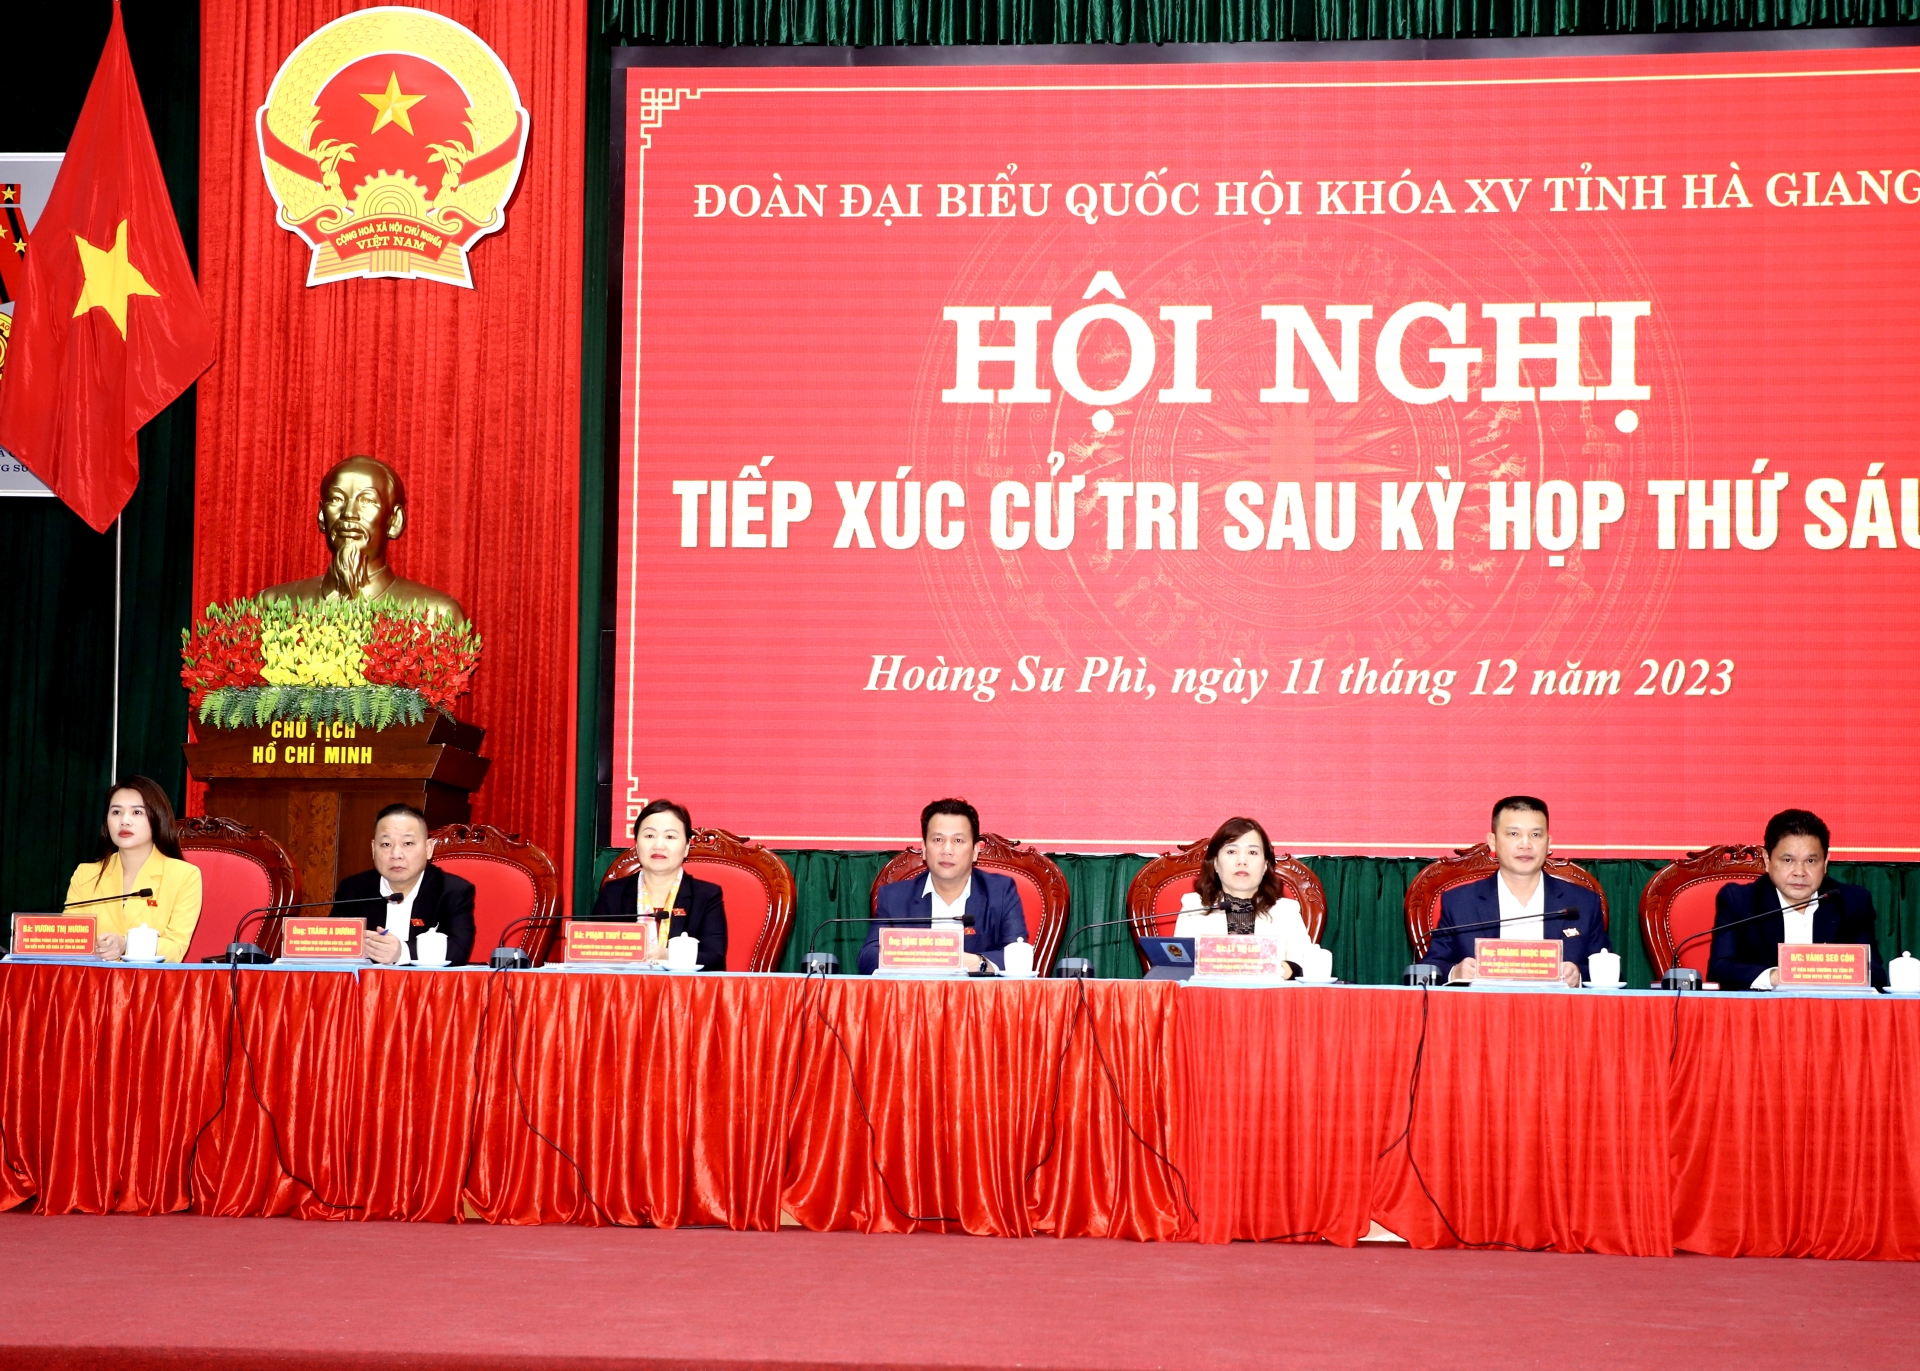 Đoàn ĐBQH khóa XV đơn vị tỉnh Hà Giang tiếp xúc cử tri tại Hoàng Su Phì